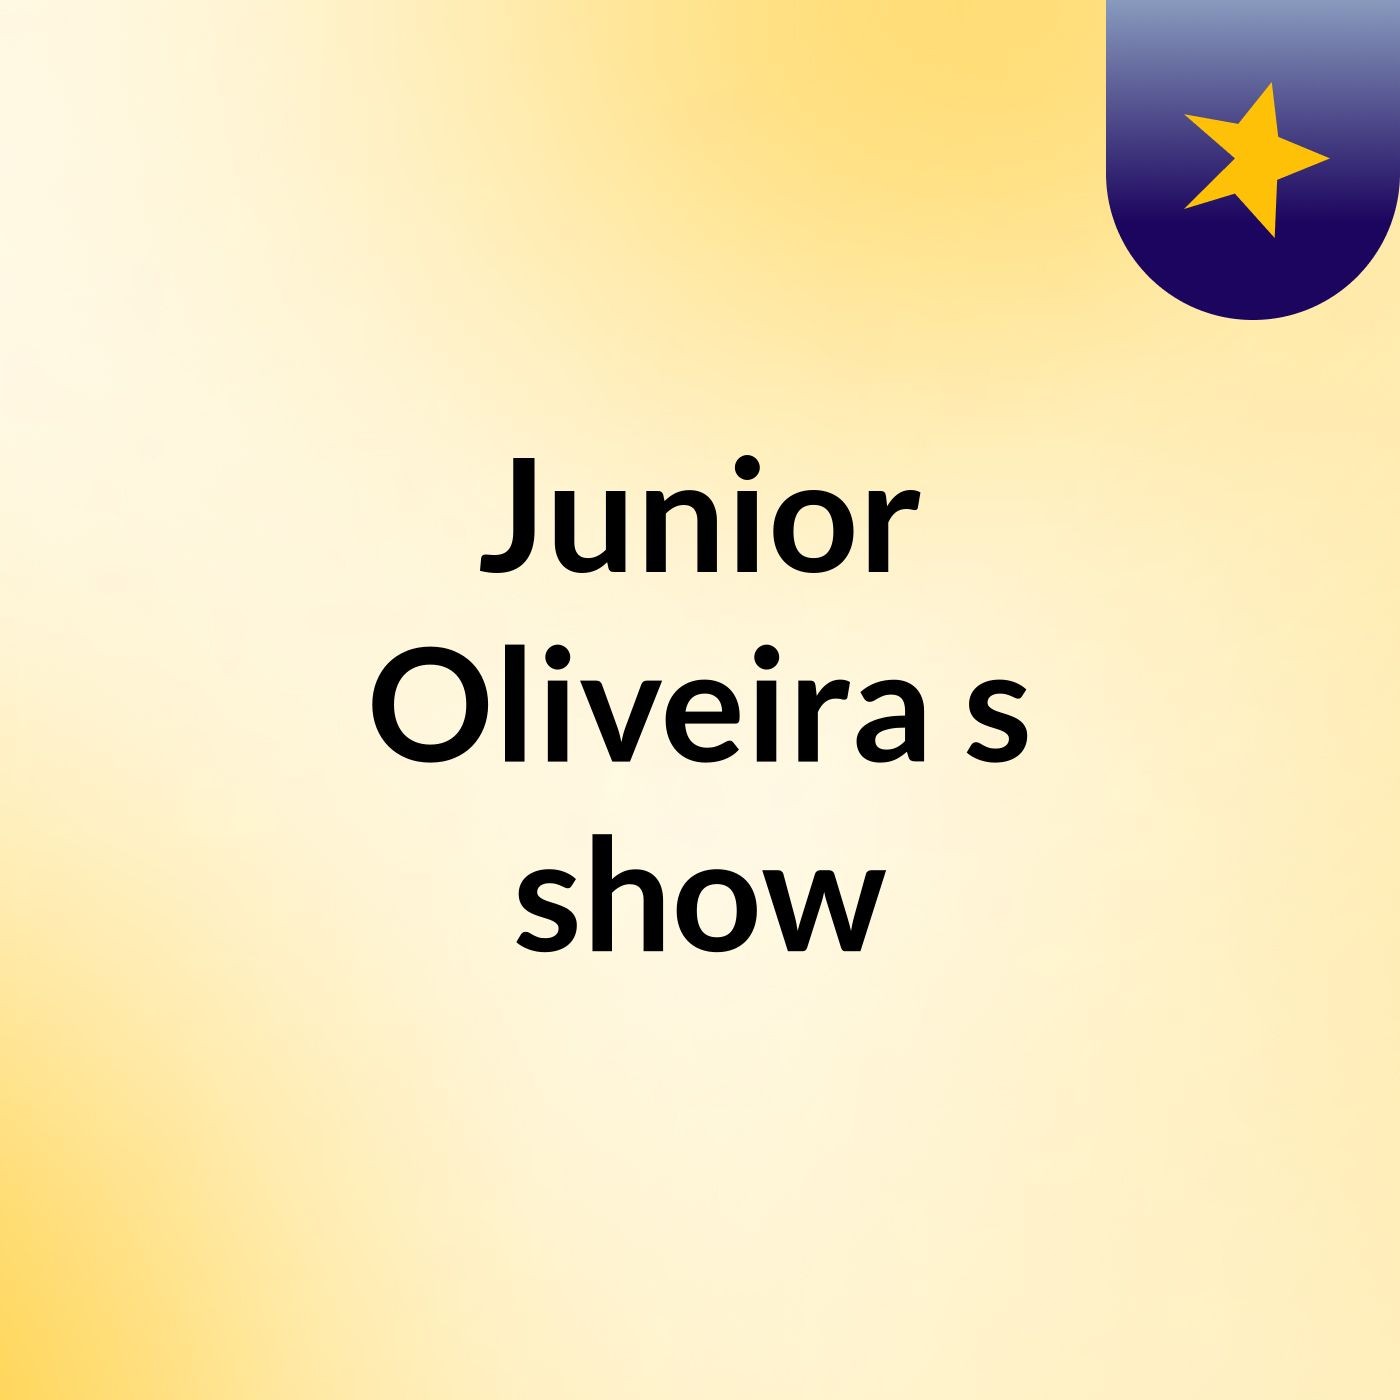 Junior Oliveira's show